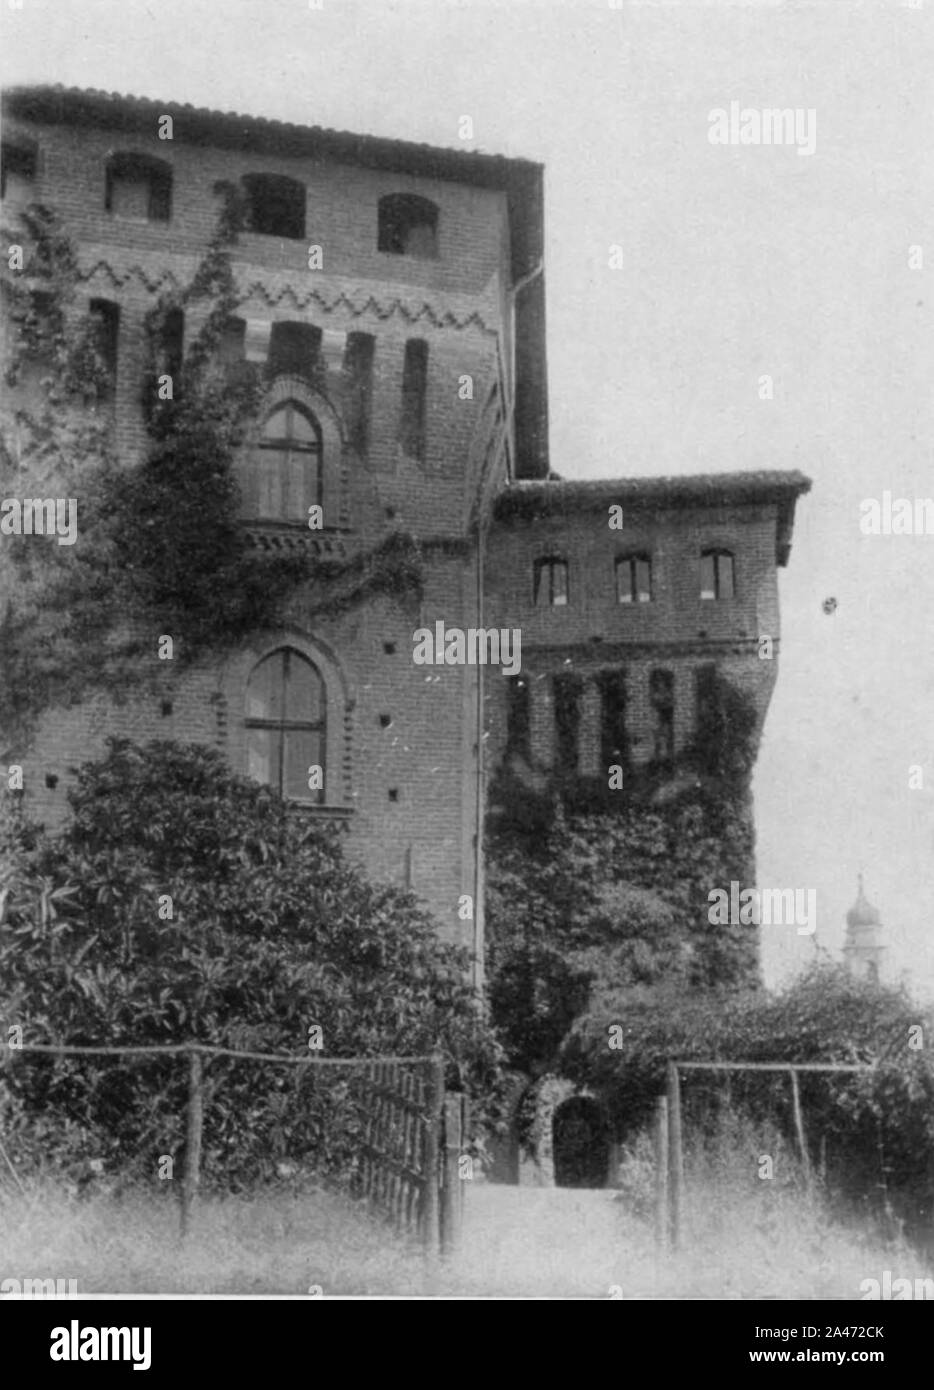 La figura 116, castello di Barengo, porta primitiva, p202, foto nigra, nigra il novarese copia copia. Foto Stock